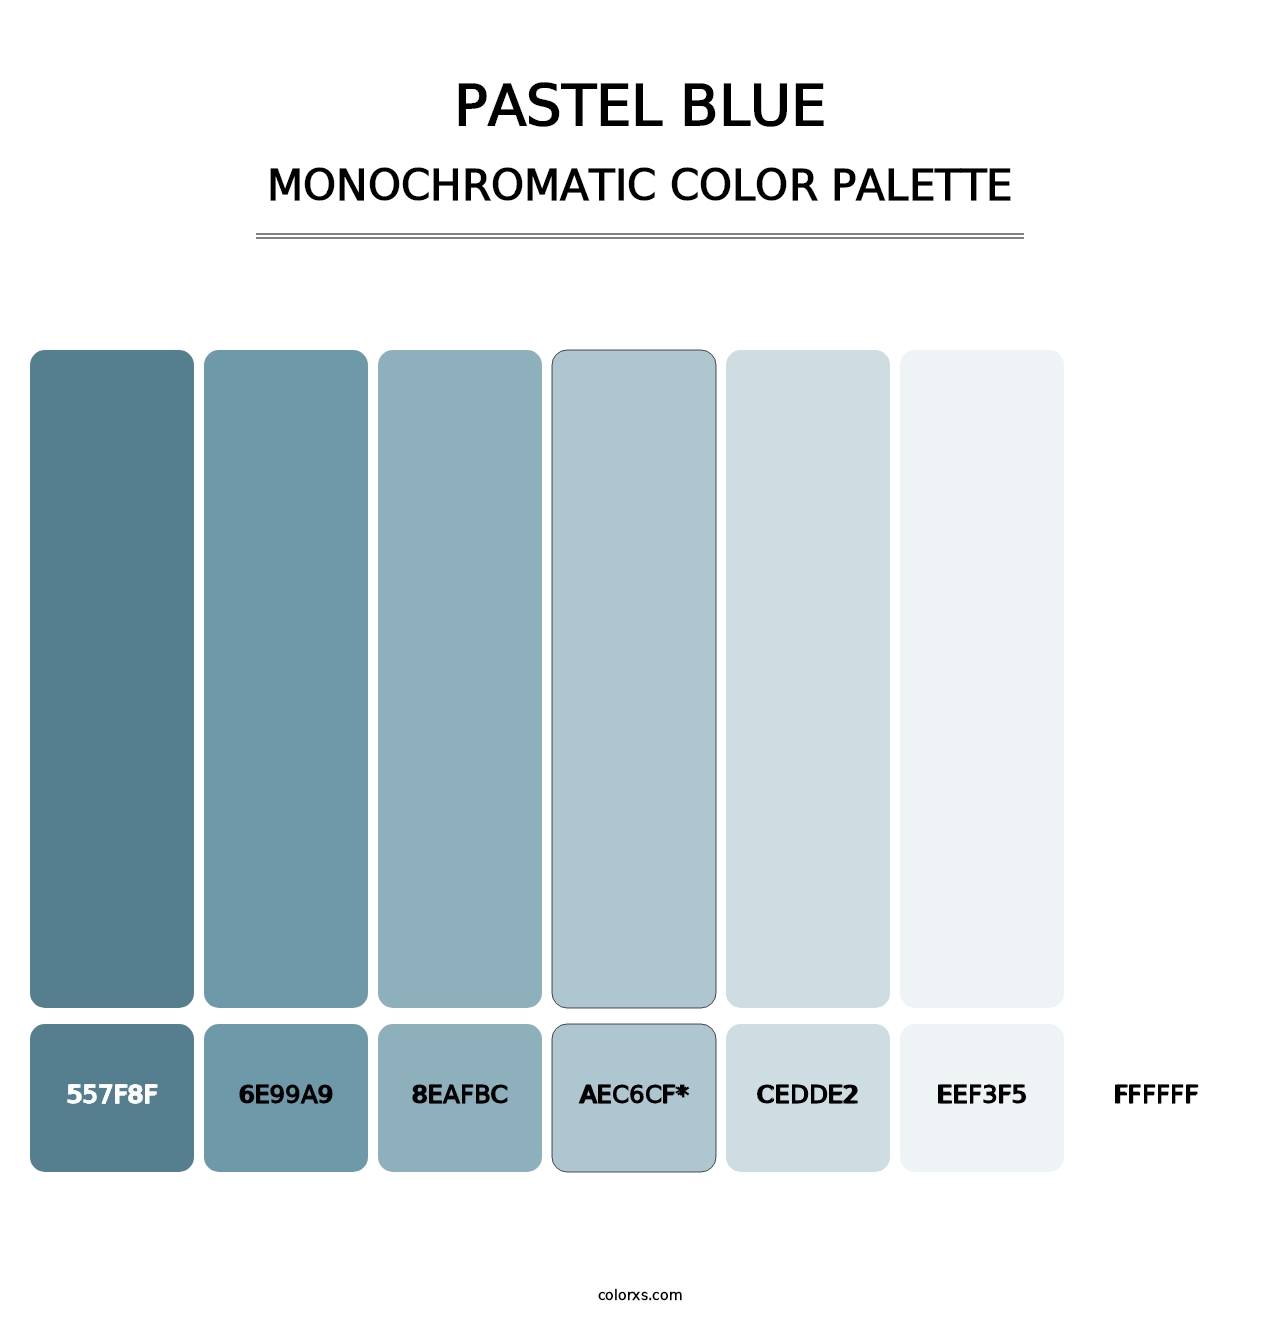 Pastel Blue - Monochromatic Color Palette